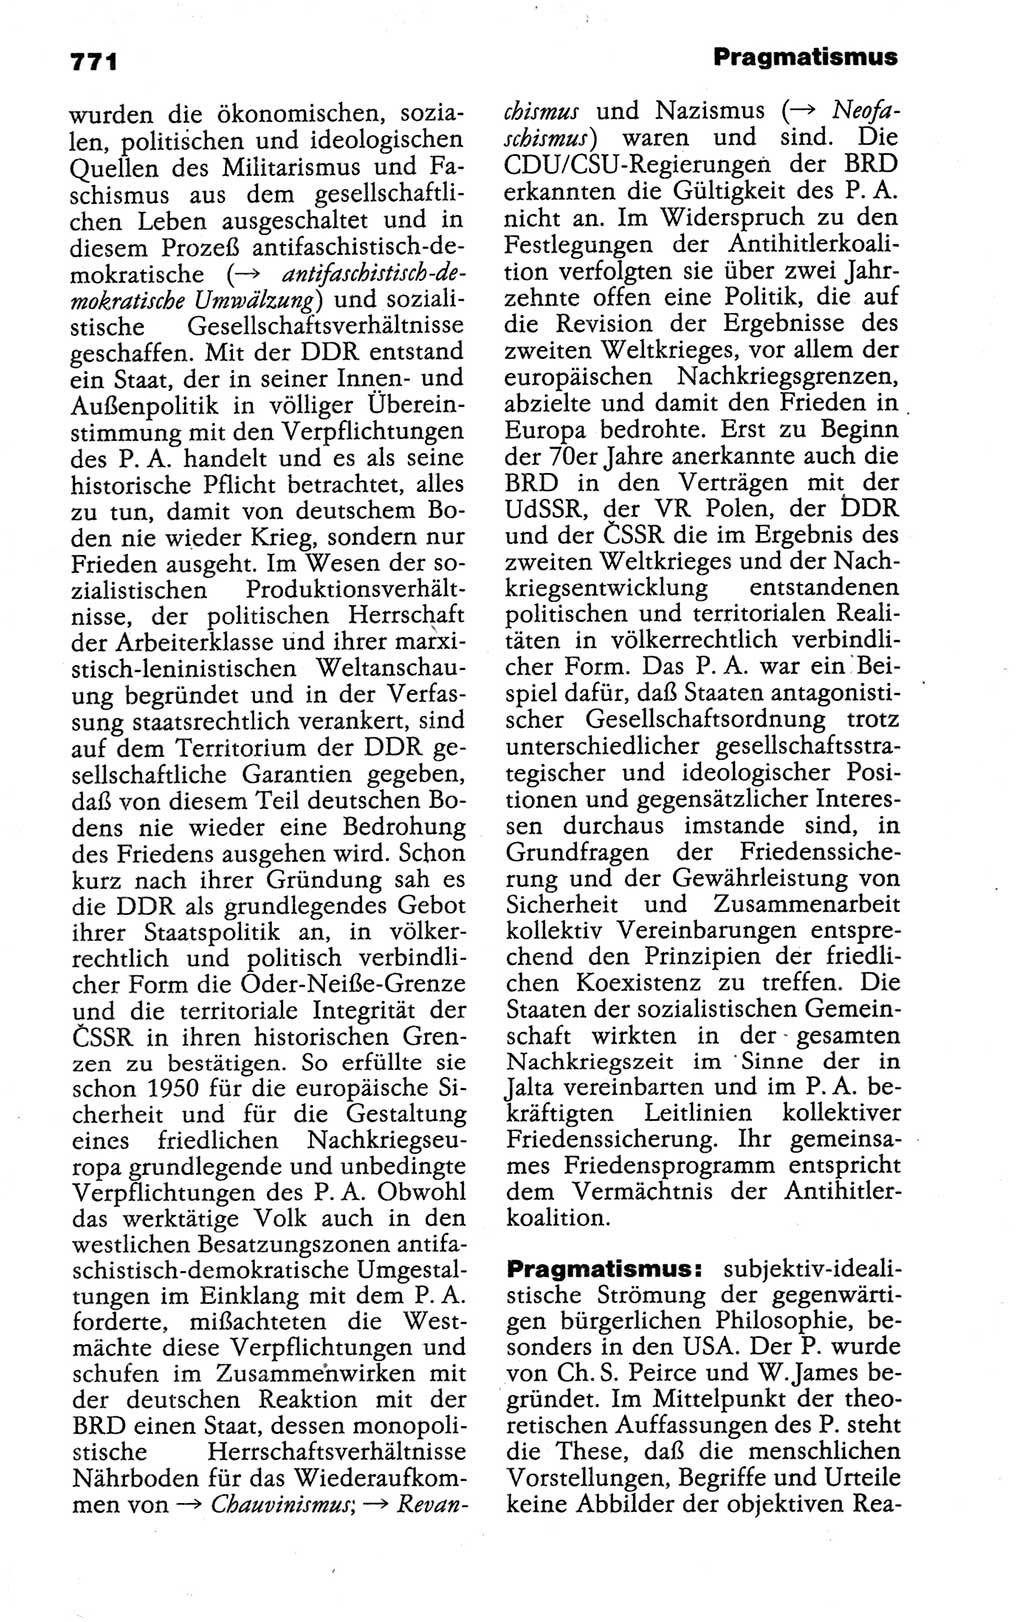 Kleines politisches Wörterbuch [Deutsche Demokratische Republik (DDR)] 1988, Seite 771 (Kl. pol. Wb. DDR 1988, S. 771)